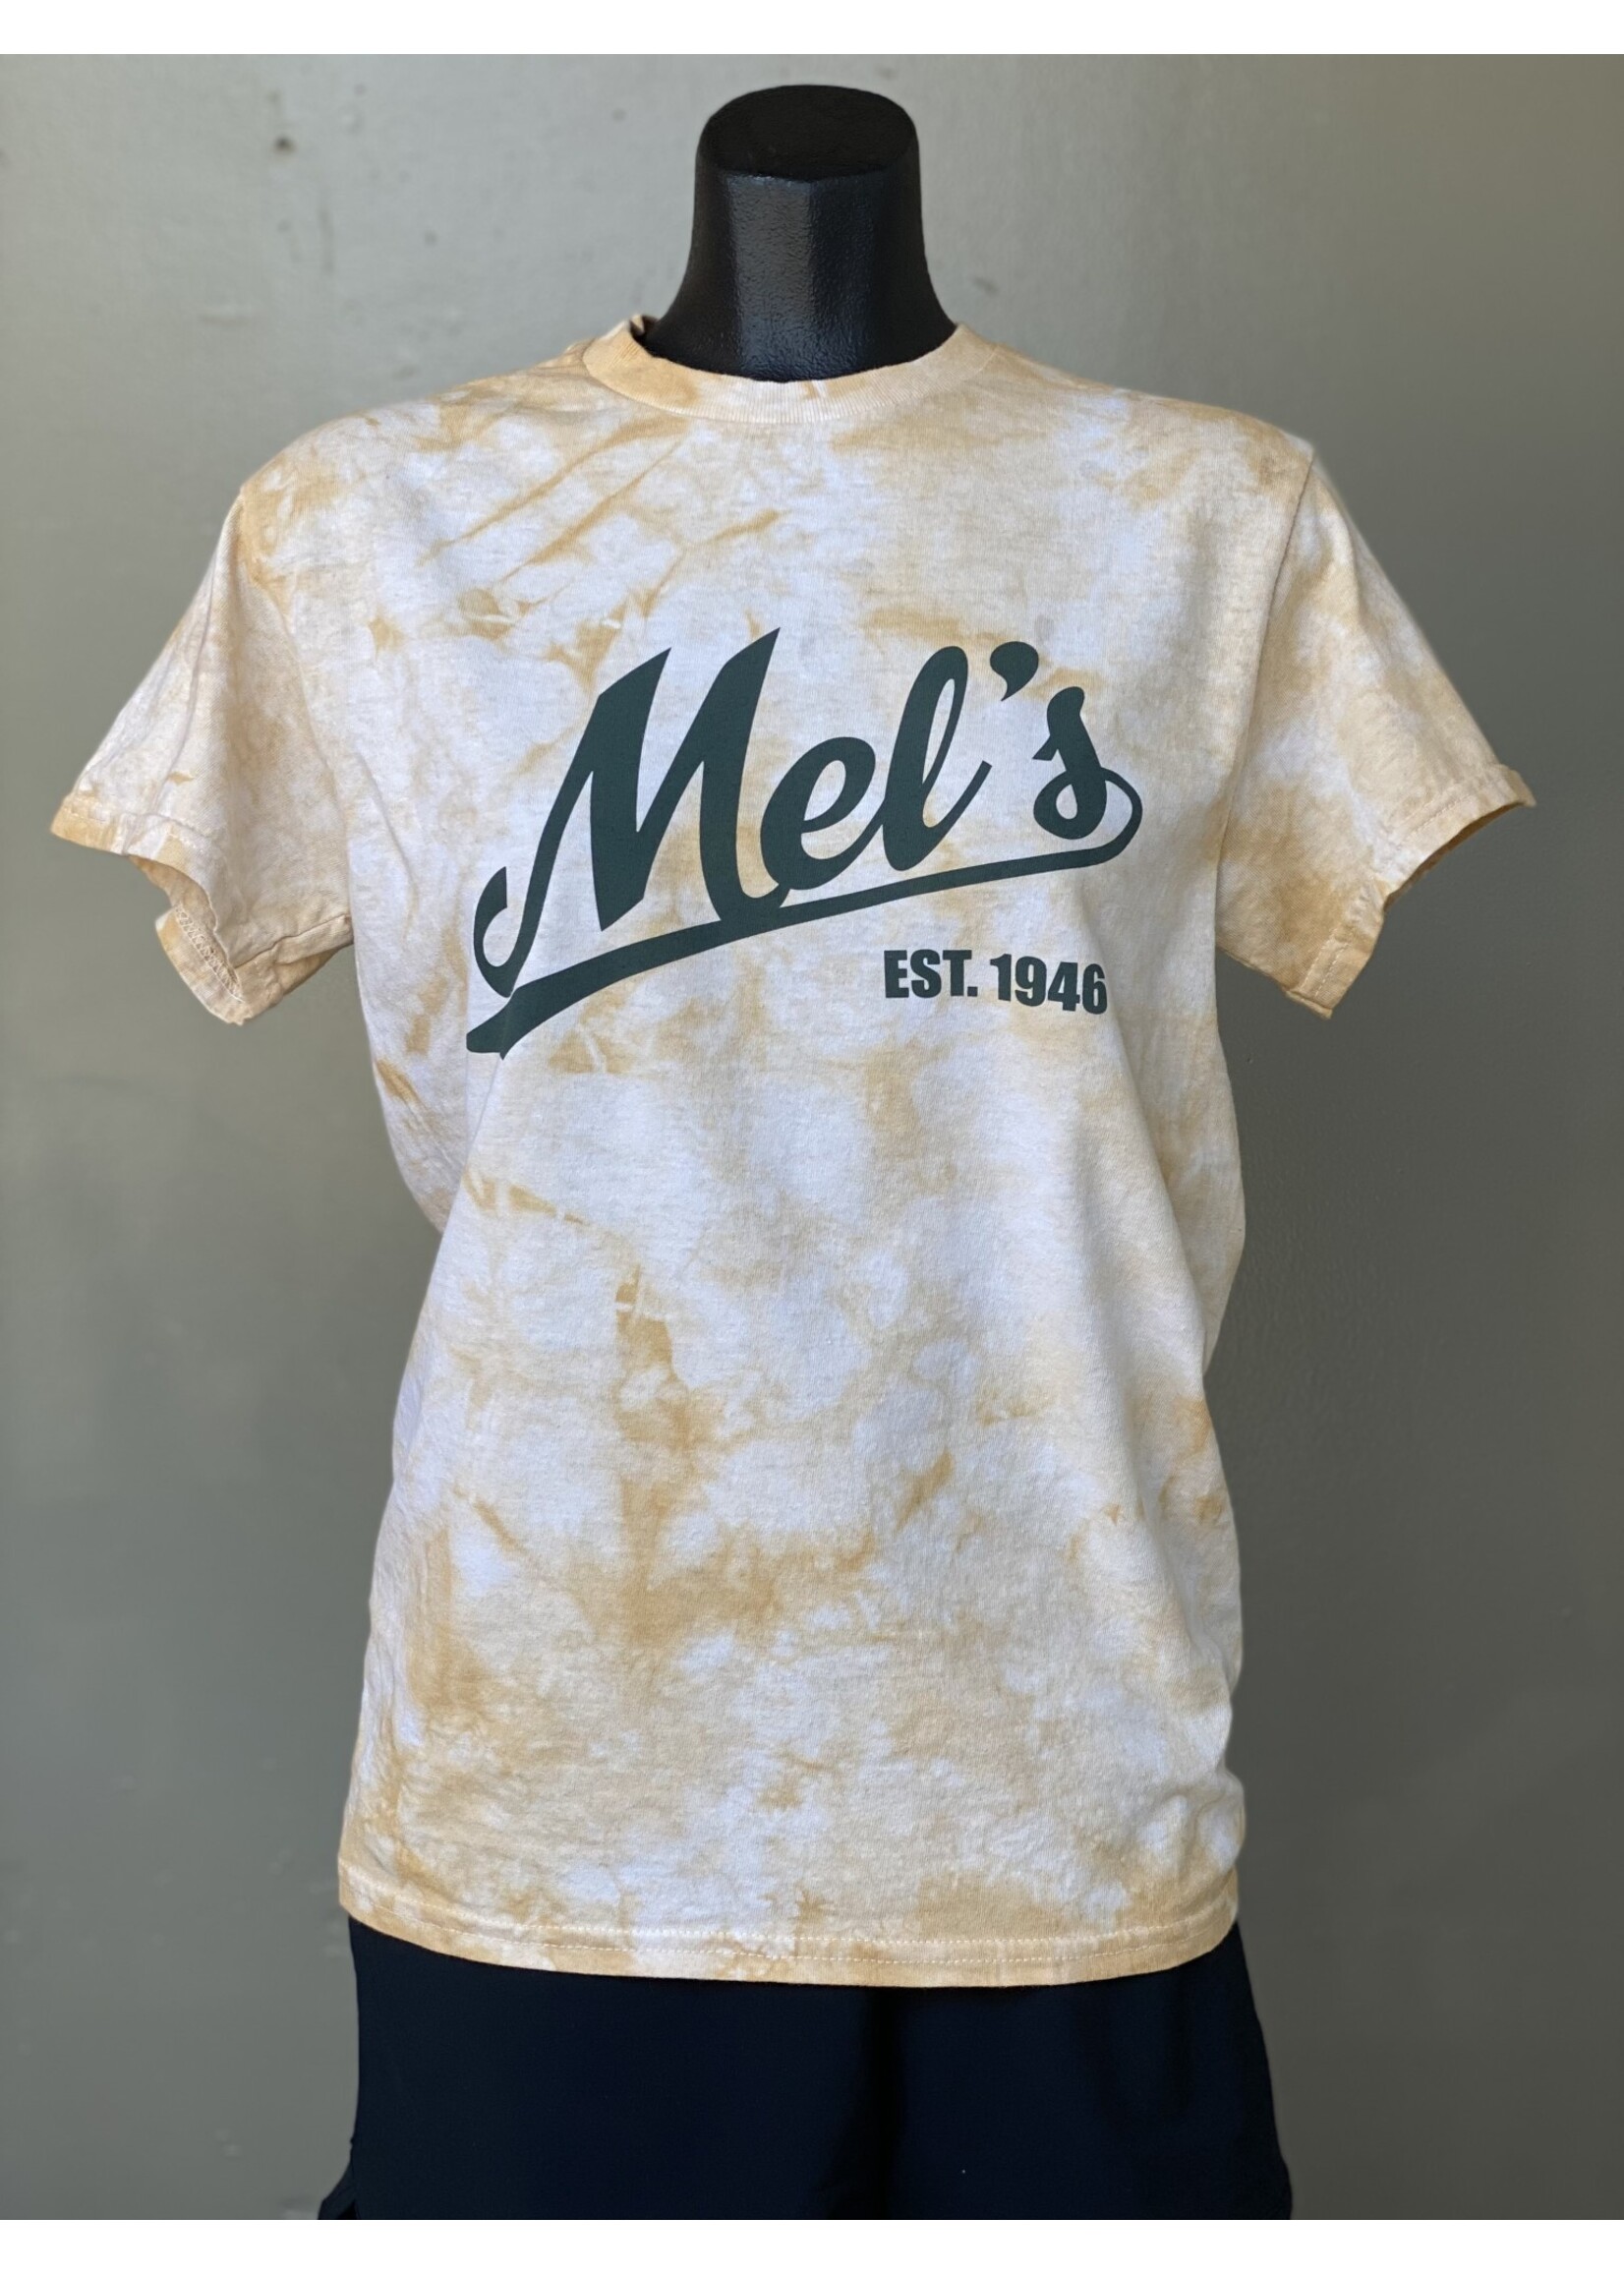 Mel's! Mel's Trading Post Dyenomite Tie-Dye T-Shirt